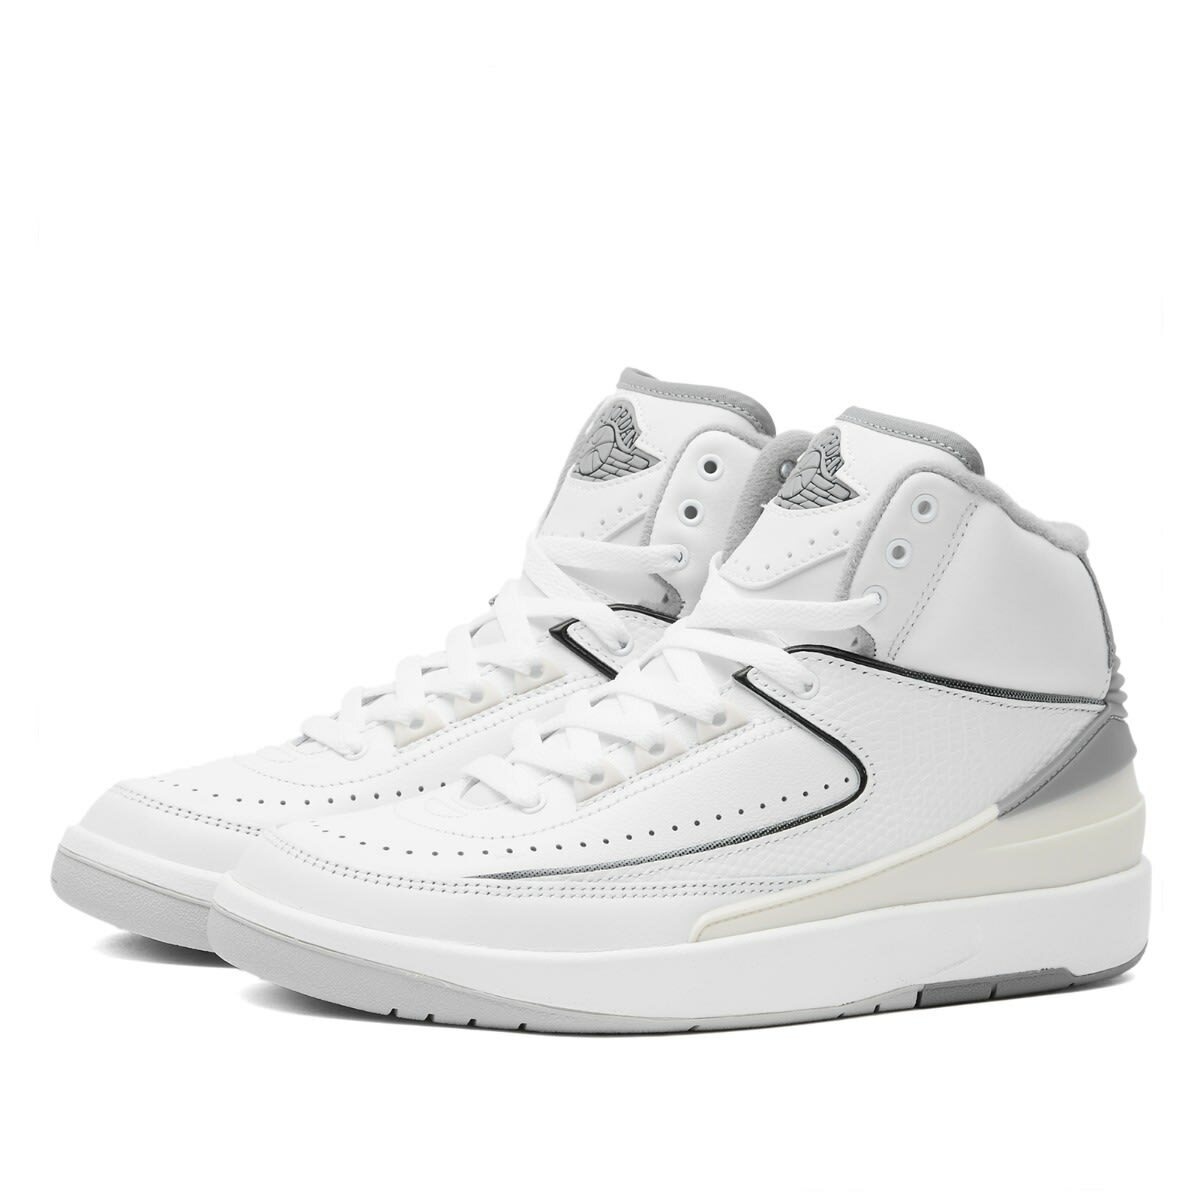 Air Jordan 2 Retro GS Sneakers in White/Cement Grey Nike Jordan Brand